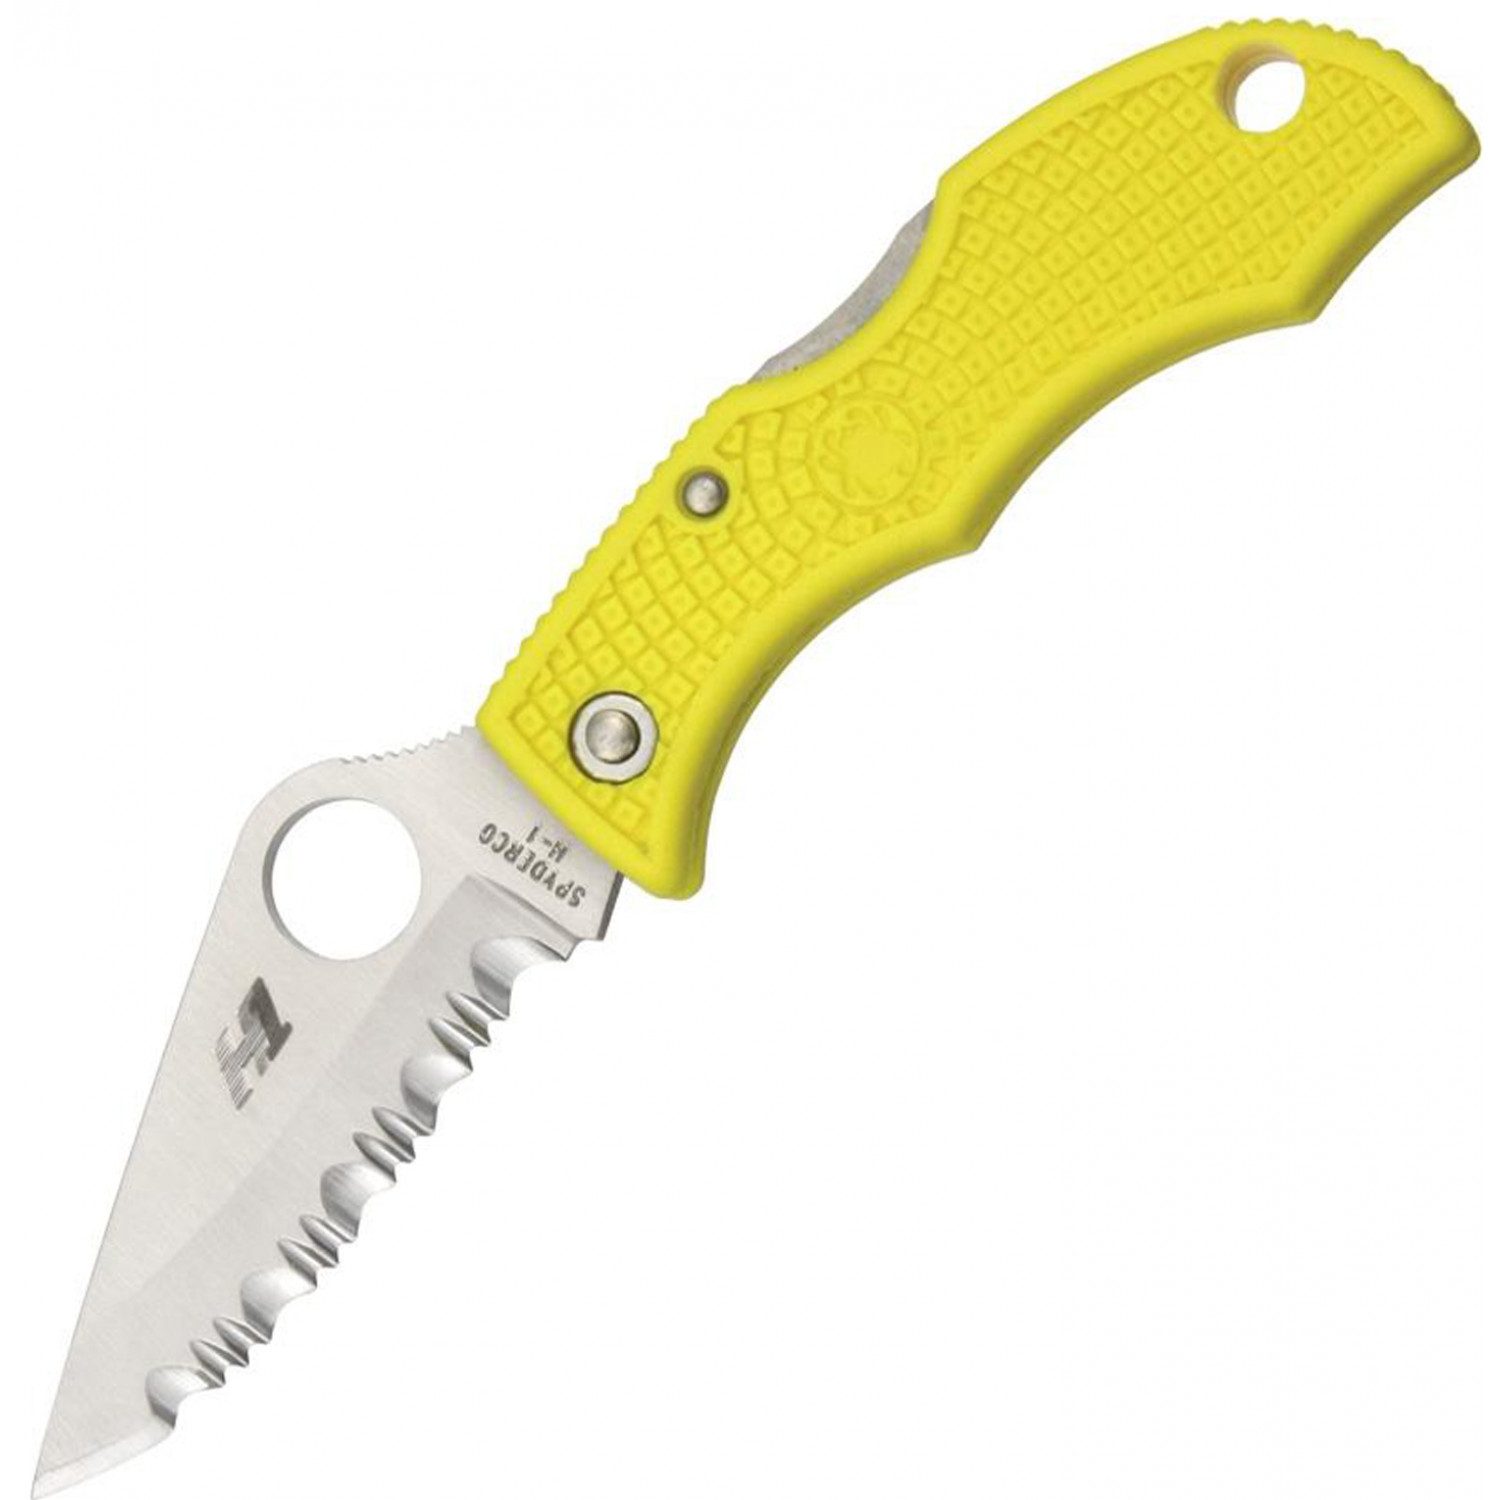 Нож складной Ladybug 3 Salt - Spyderco LYLS3, сталь H1 Satin Serrated, рукоять термопластик FRN, жёлтый